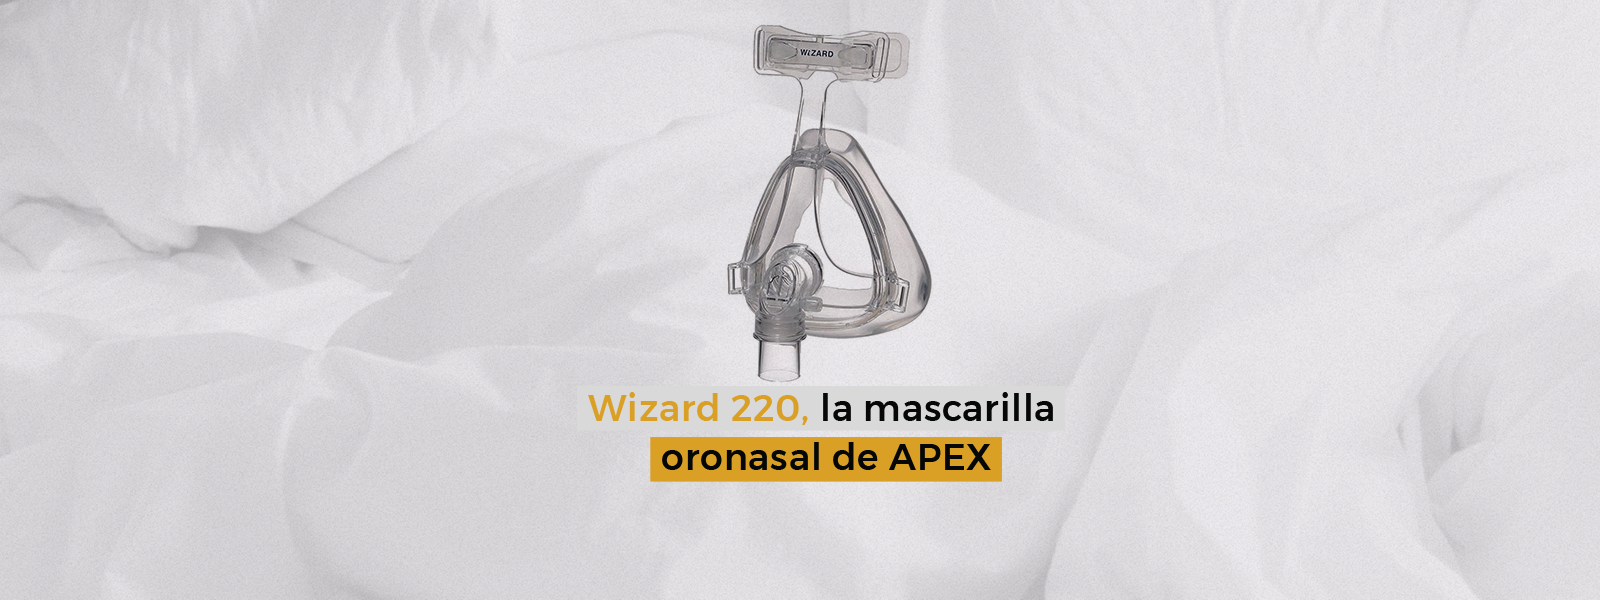 Wizard 220, las mascarillas oronasales de APEX